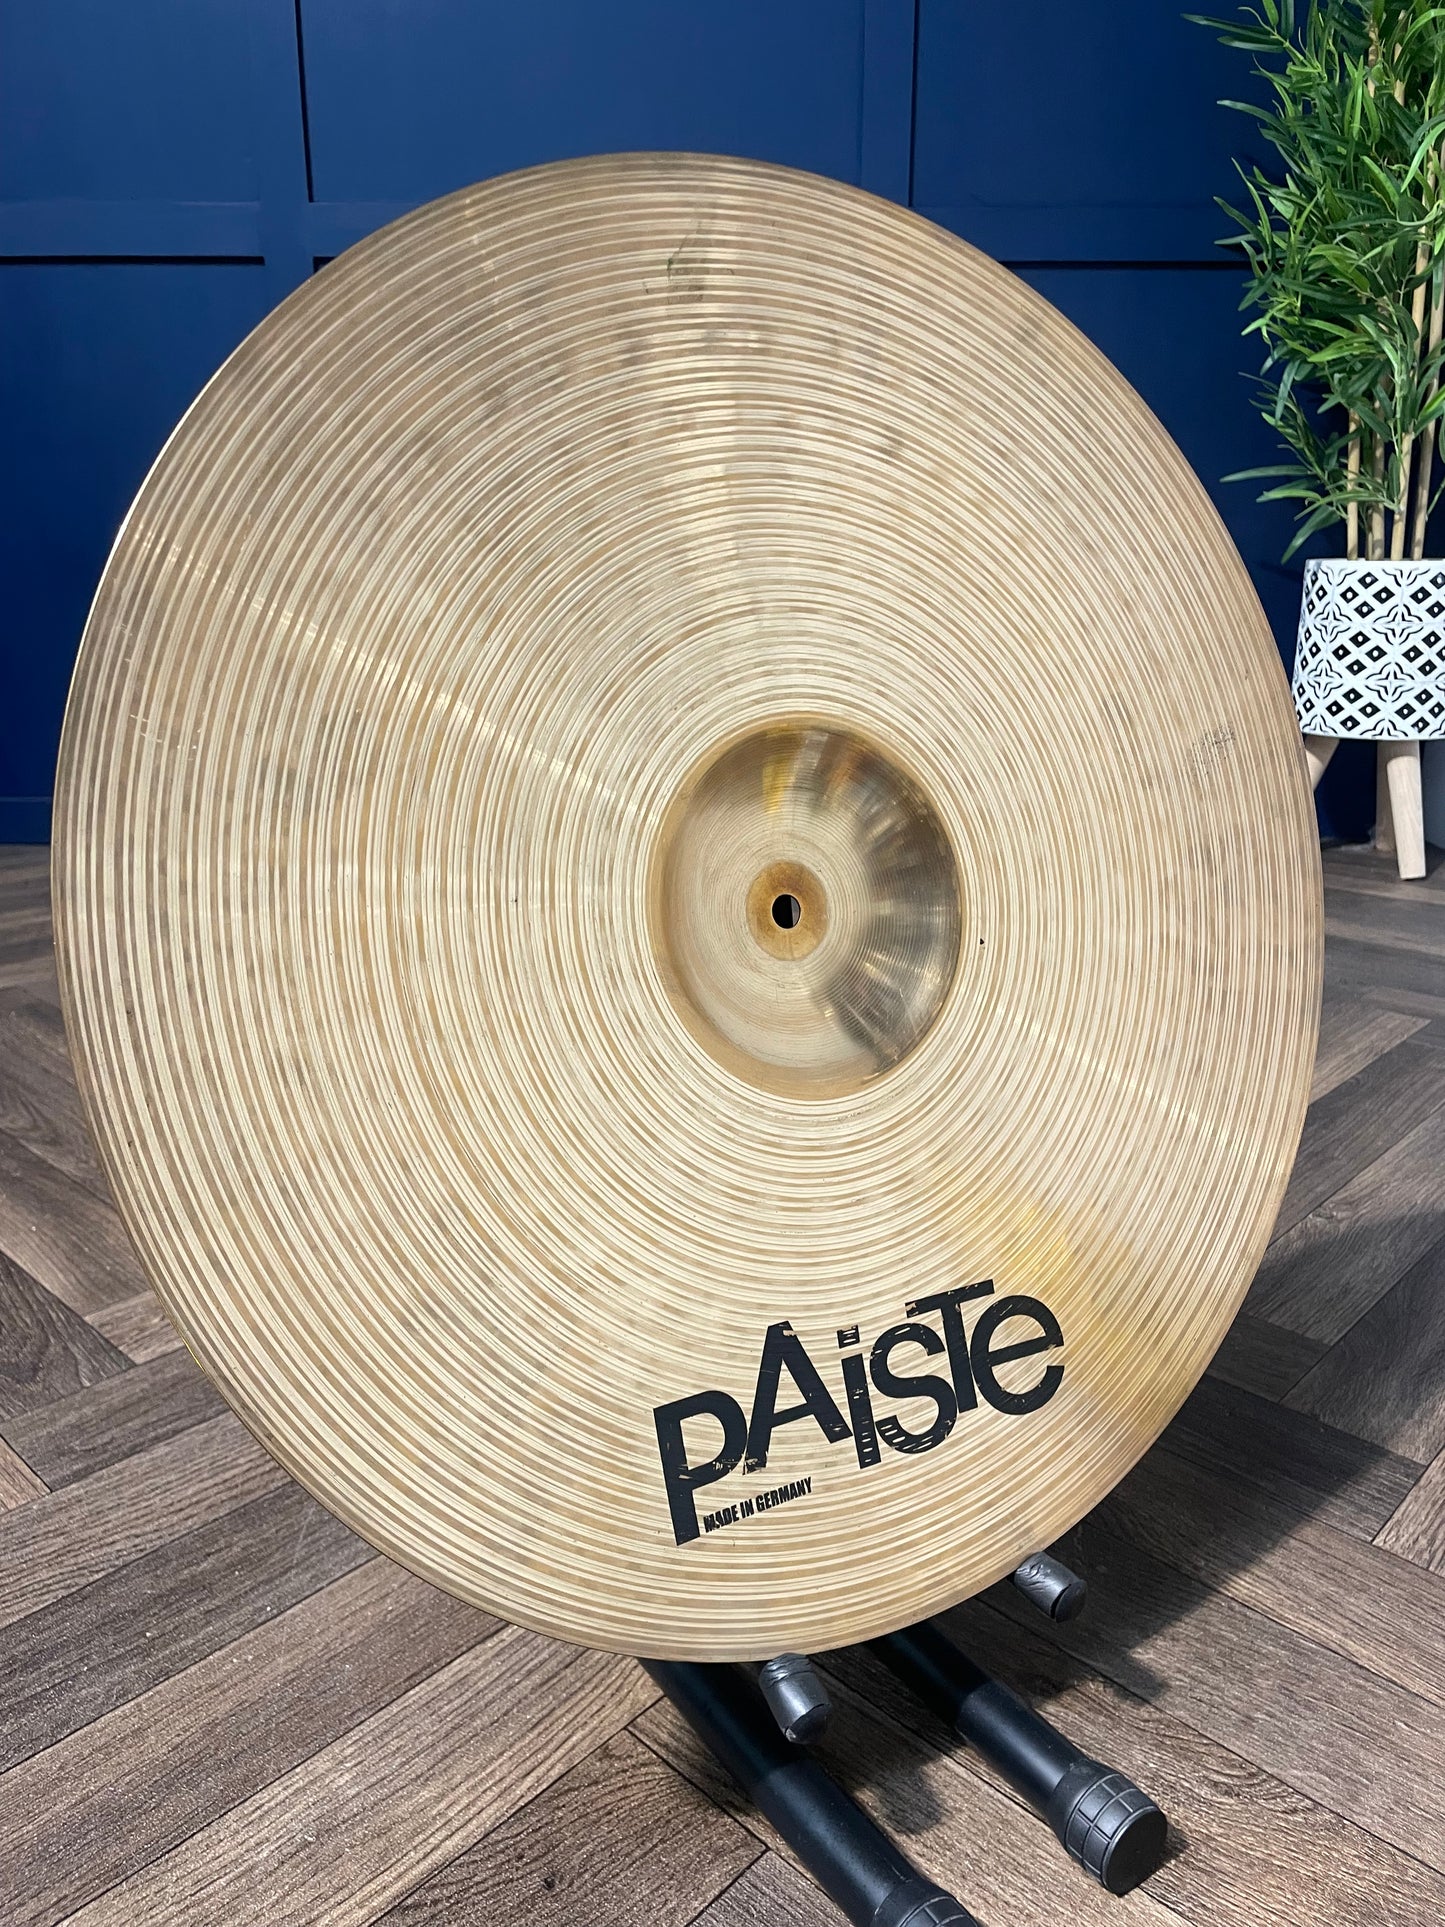 Paiste 802 Plus Ride 20” Cymbal / Drum Accessory #LA91